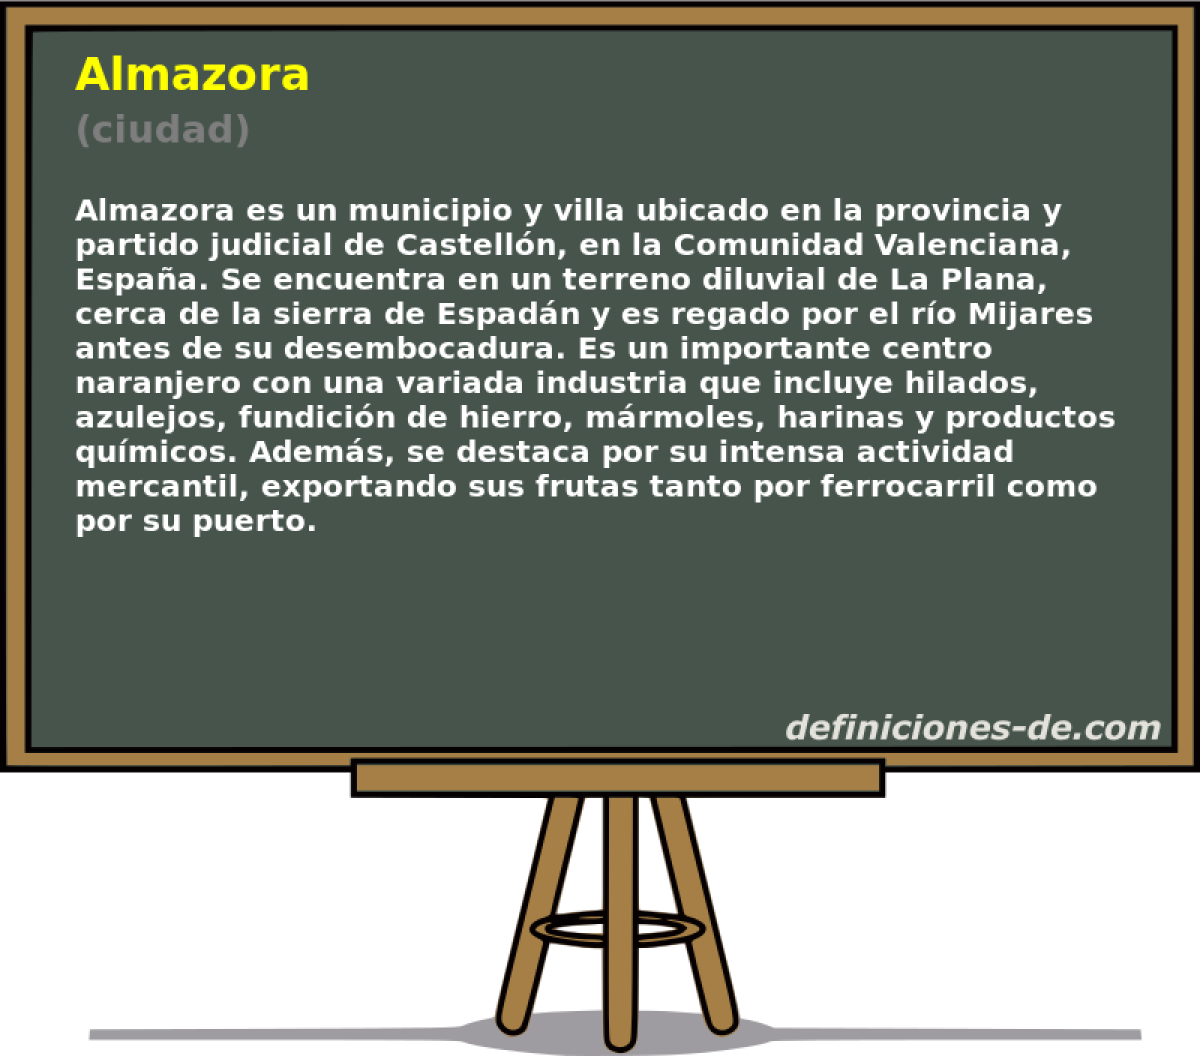 Almazora (ciudad)